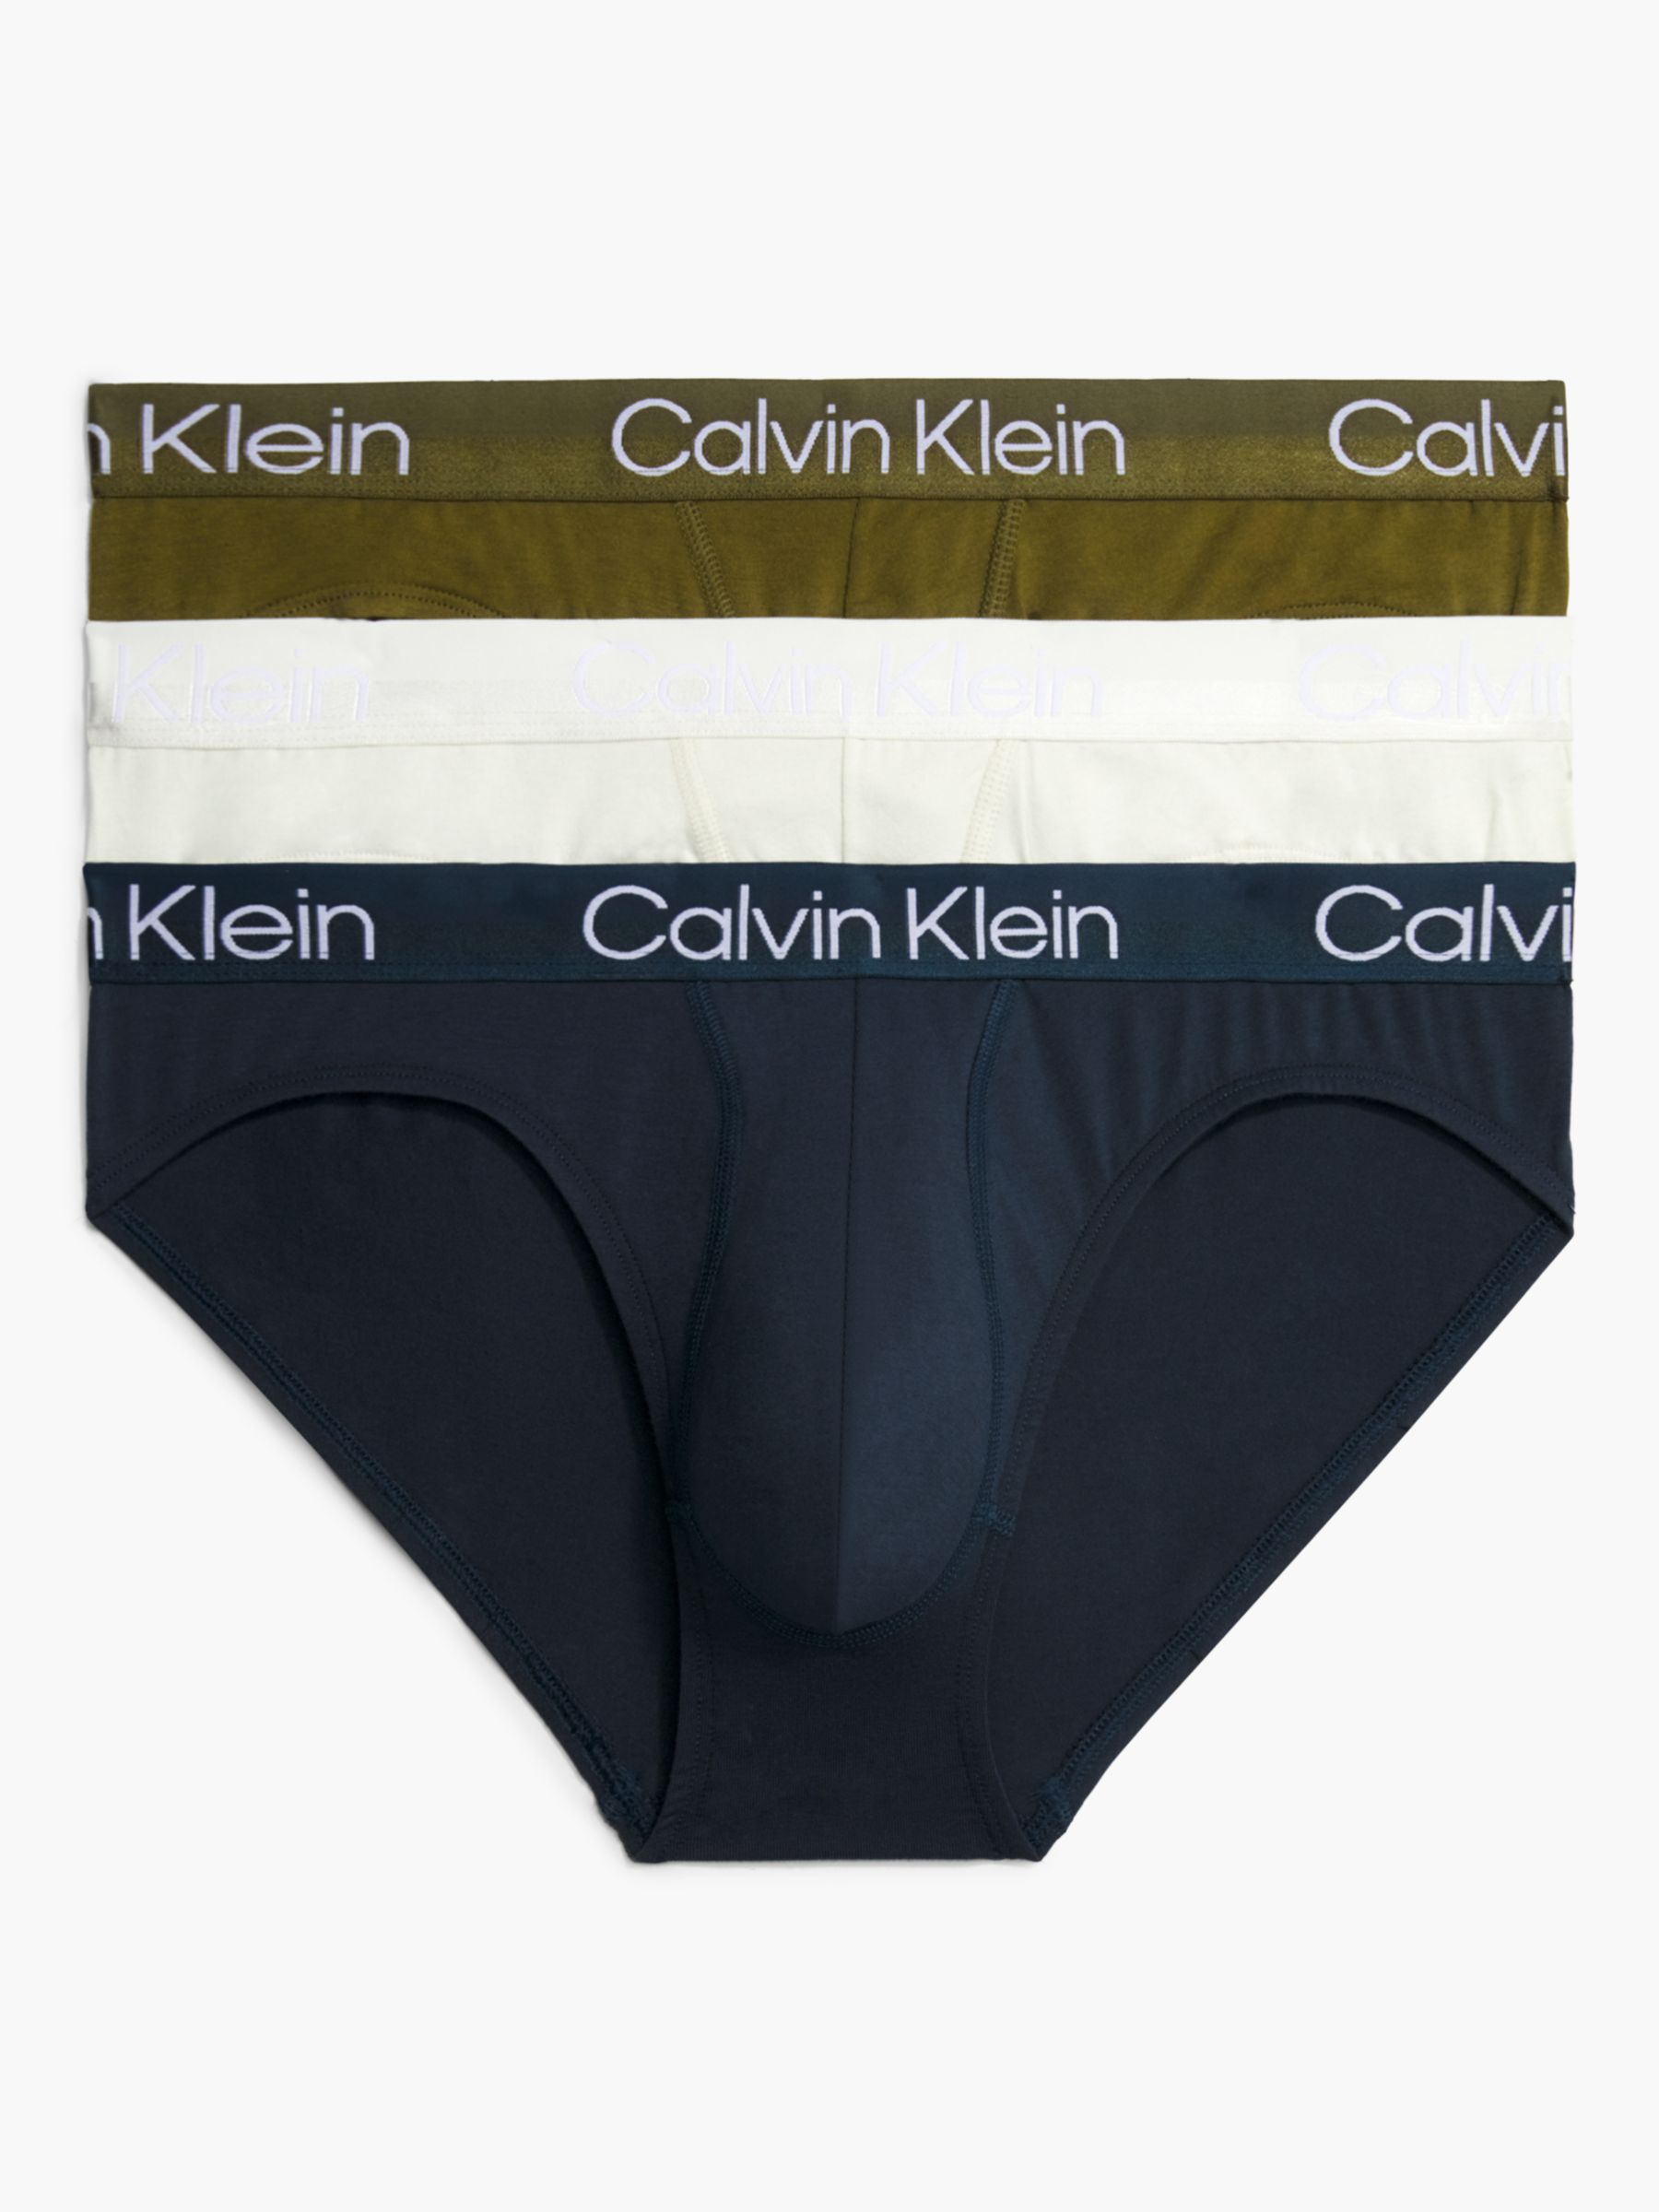 Calvin Klein Modern Structure Hip Briefs, Pack of 3, Grey/Olive